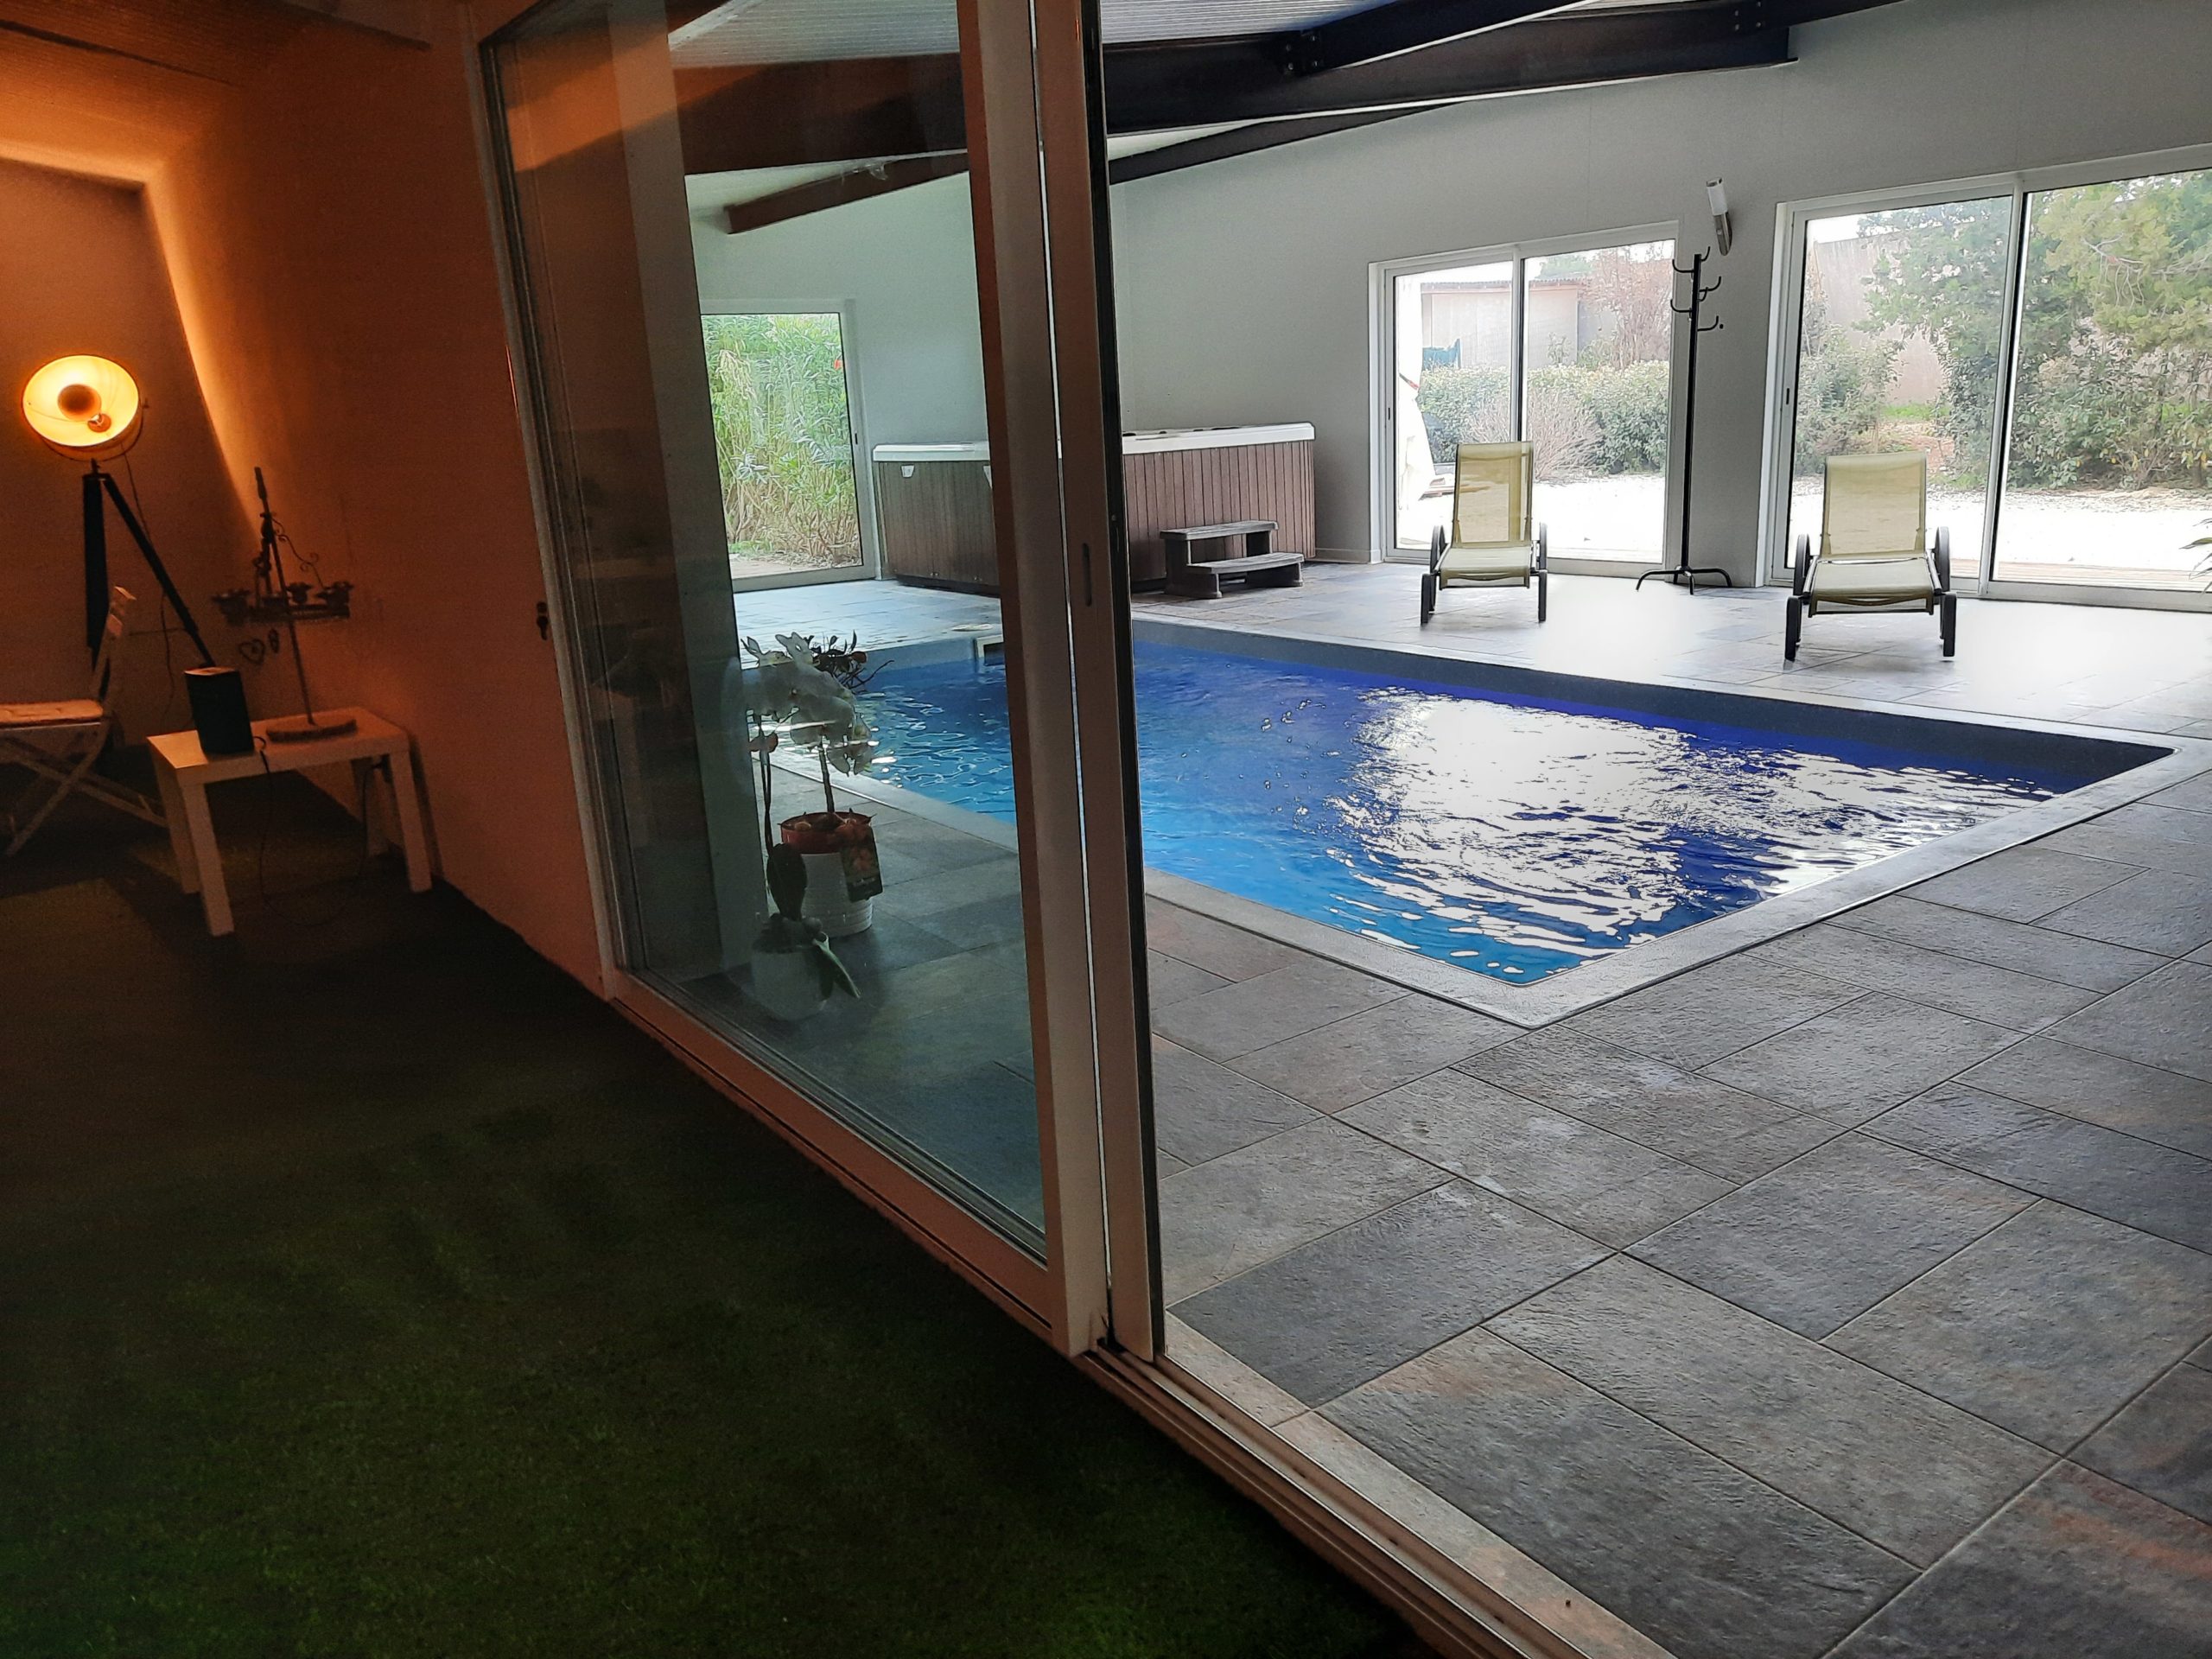 Chambre d'hôte avec piscine interieur Vaucluse